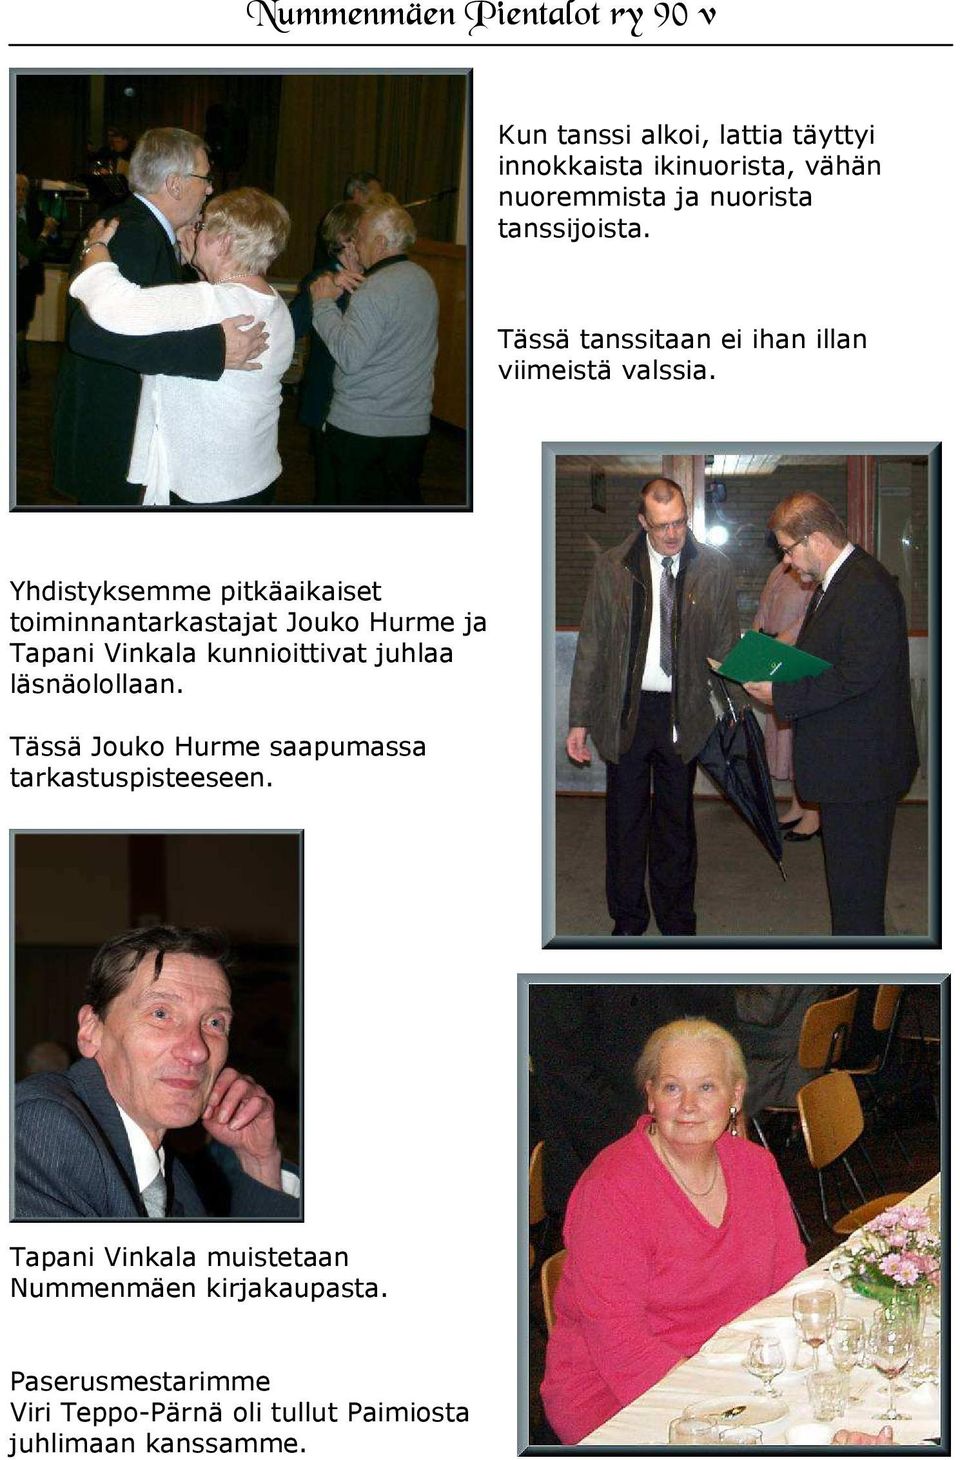 Yhdistyksemme pitkäaikaiset toiminnantarkastajat Jouko Hurme ja Tapani Vinkala kunnioittivat juhlaa